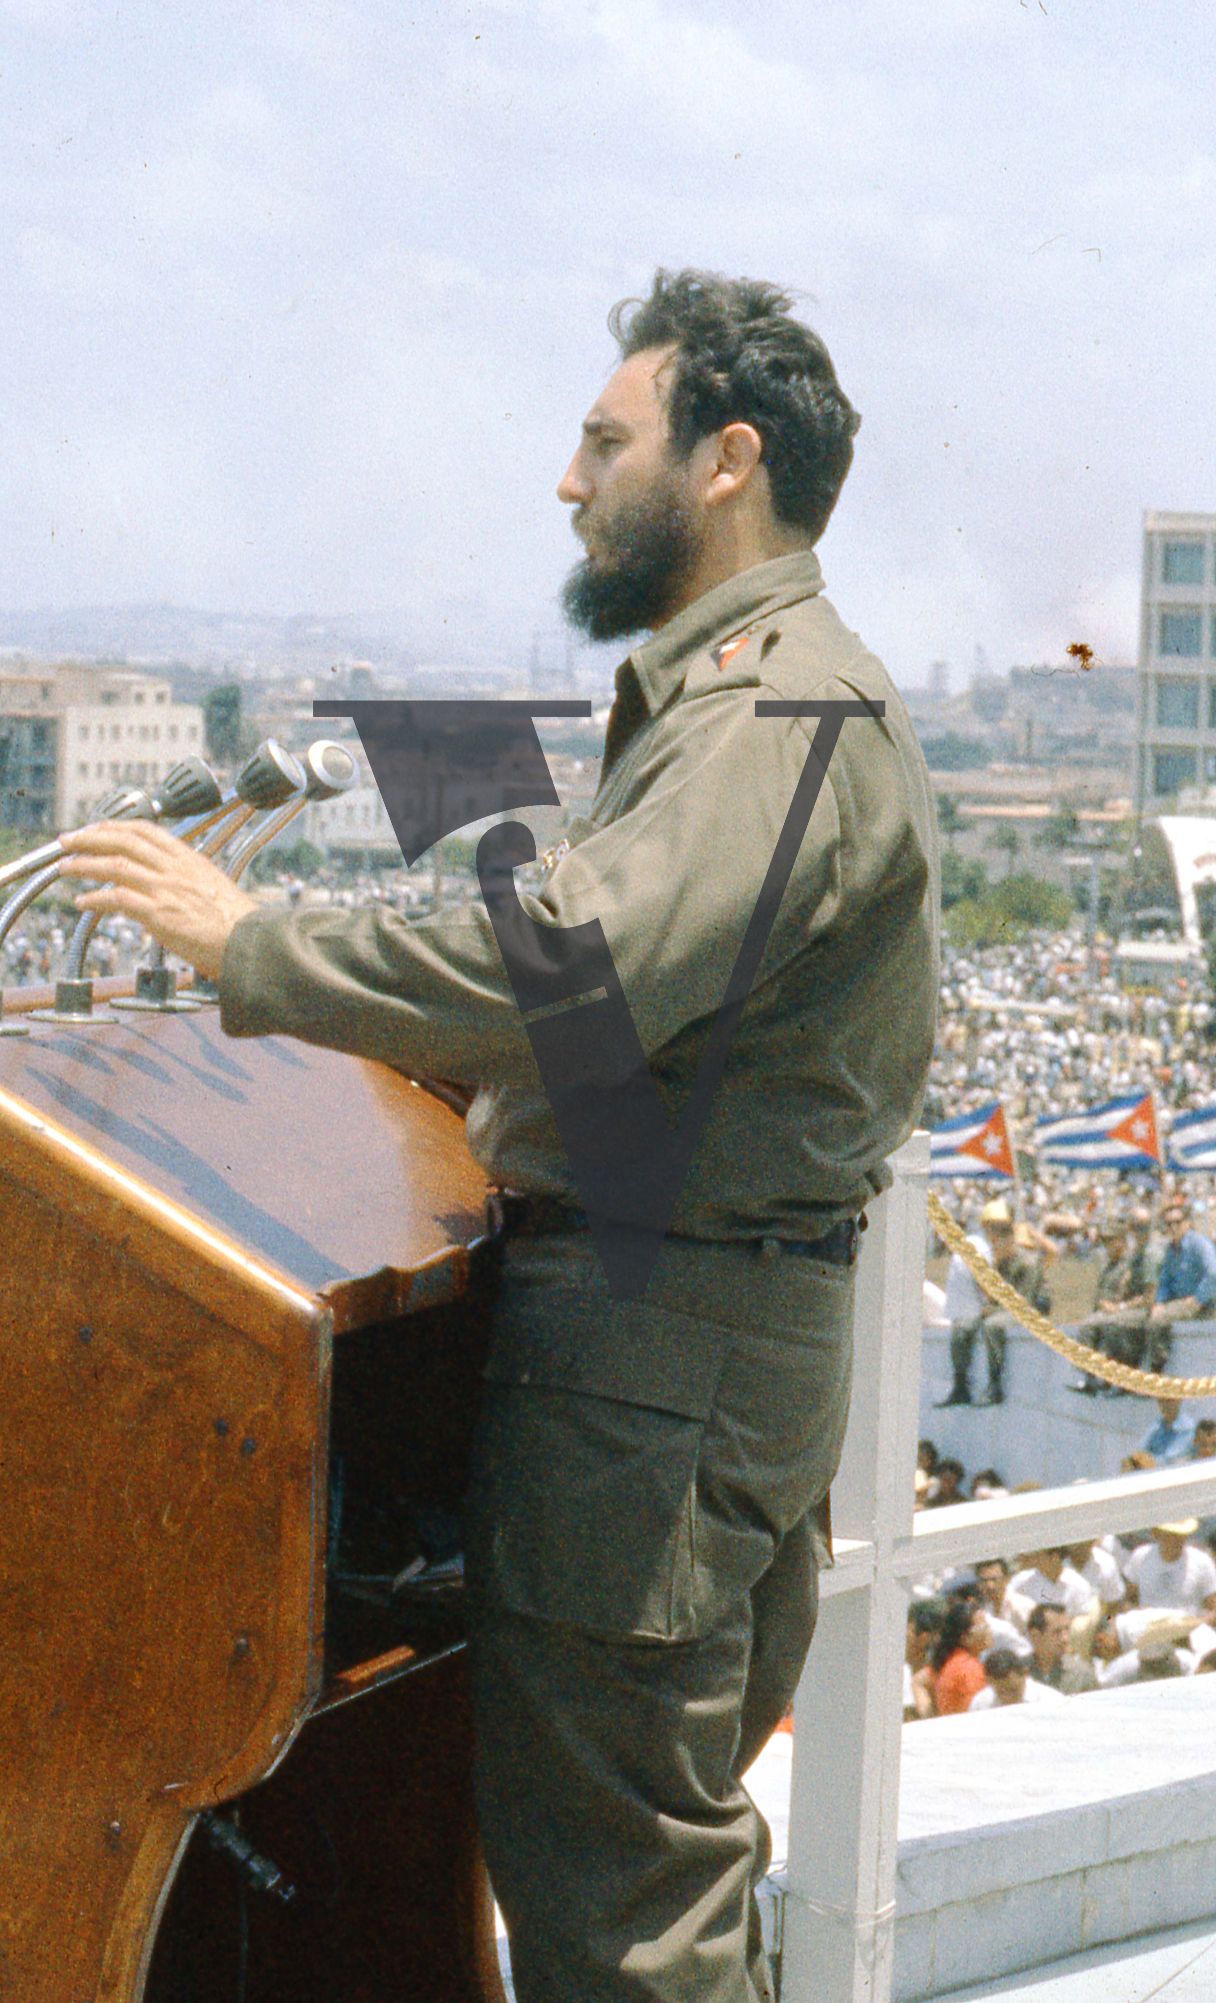 Cuba, Havana, Fidel Castro speech, close-up, gesturing.